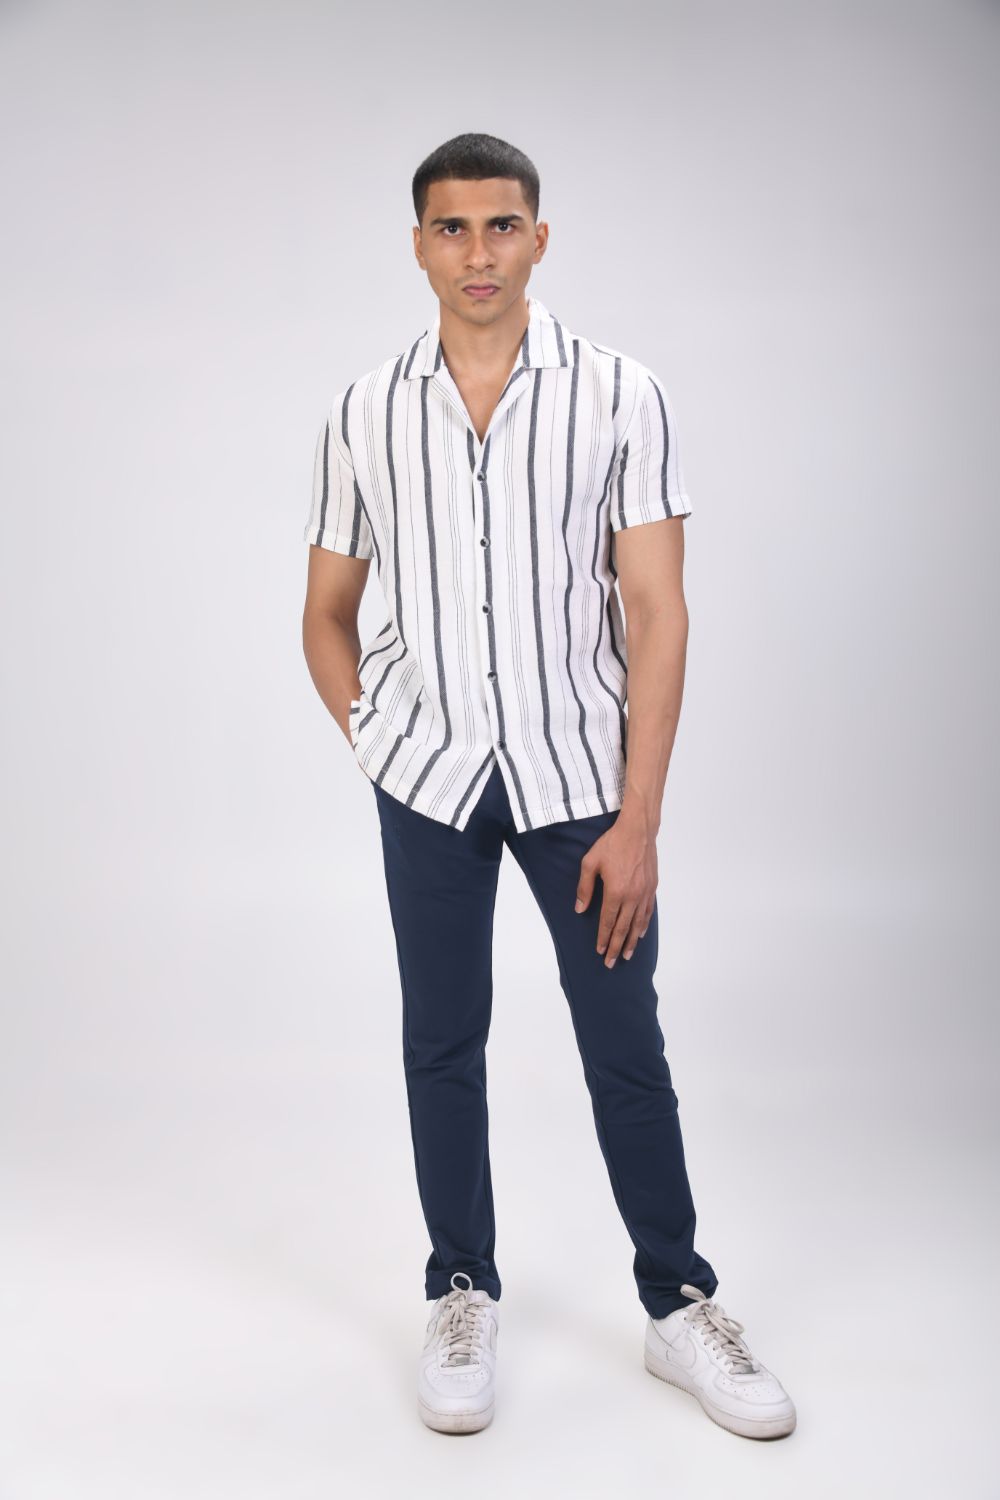 ELANHOOD Regular Fit Men White Trousers - Buy ELANHOOD Regular Fit Men White  Trousers Online at Best Prices in India | Flipkart.com